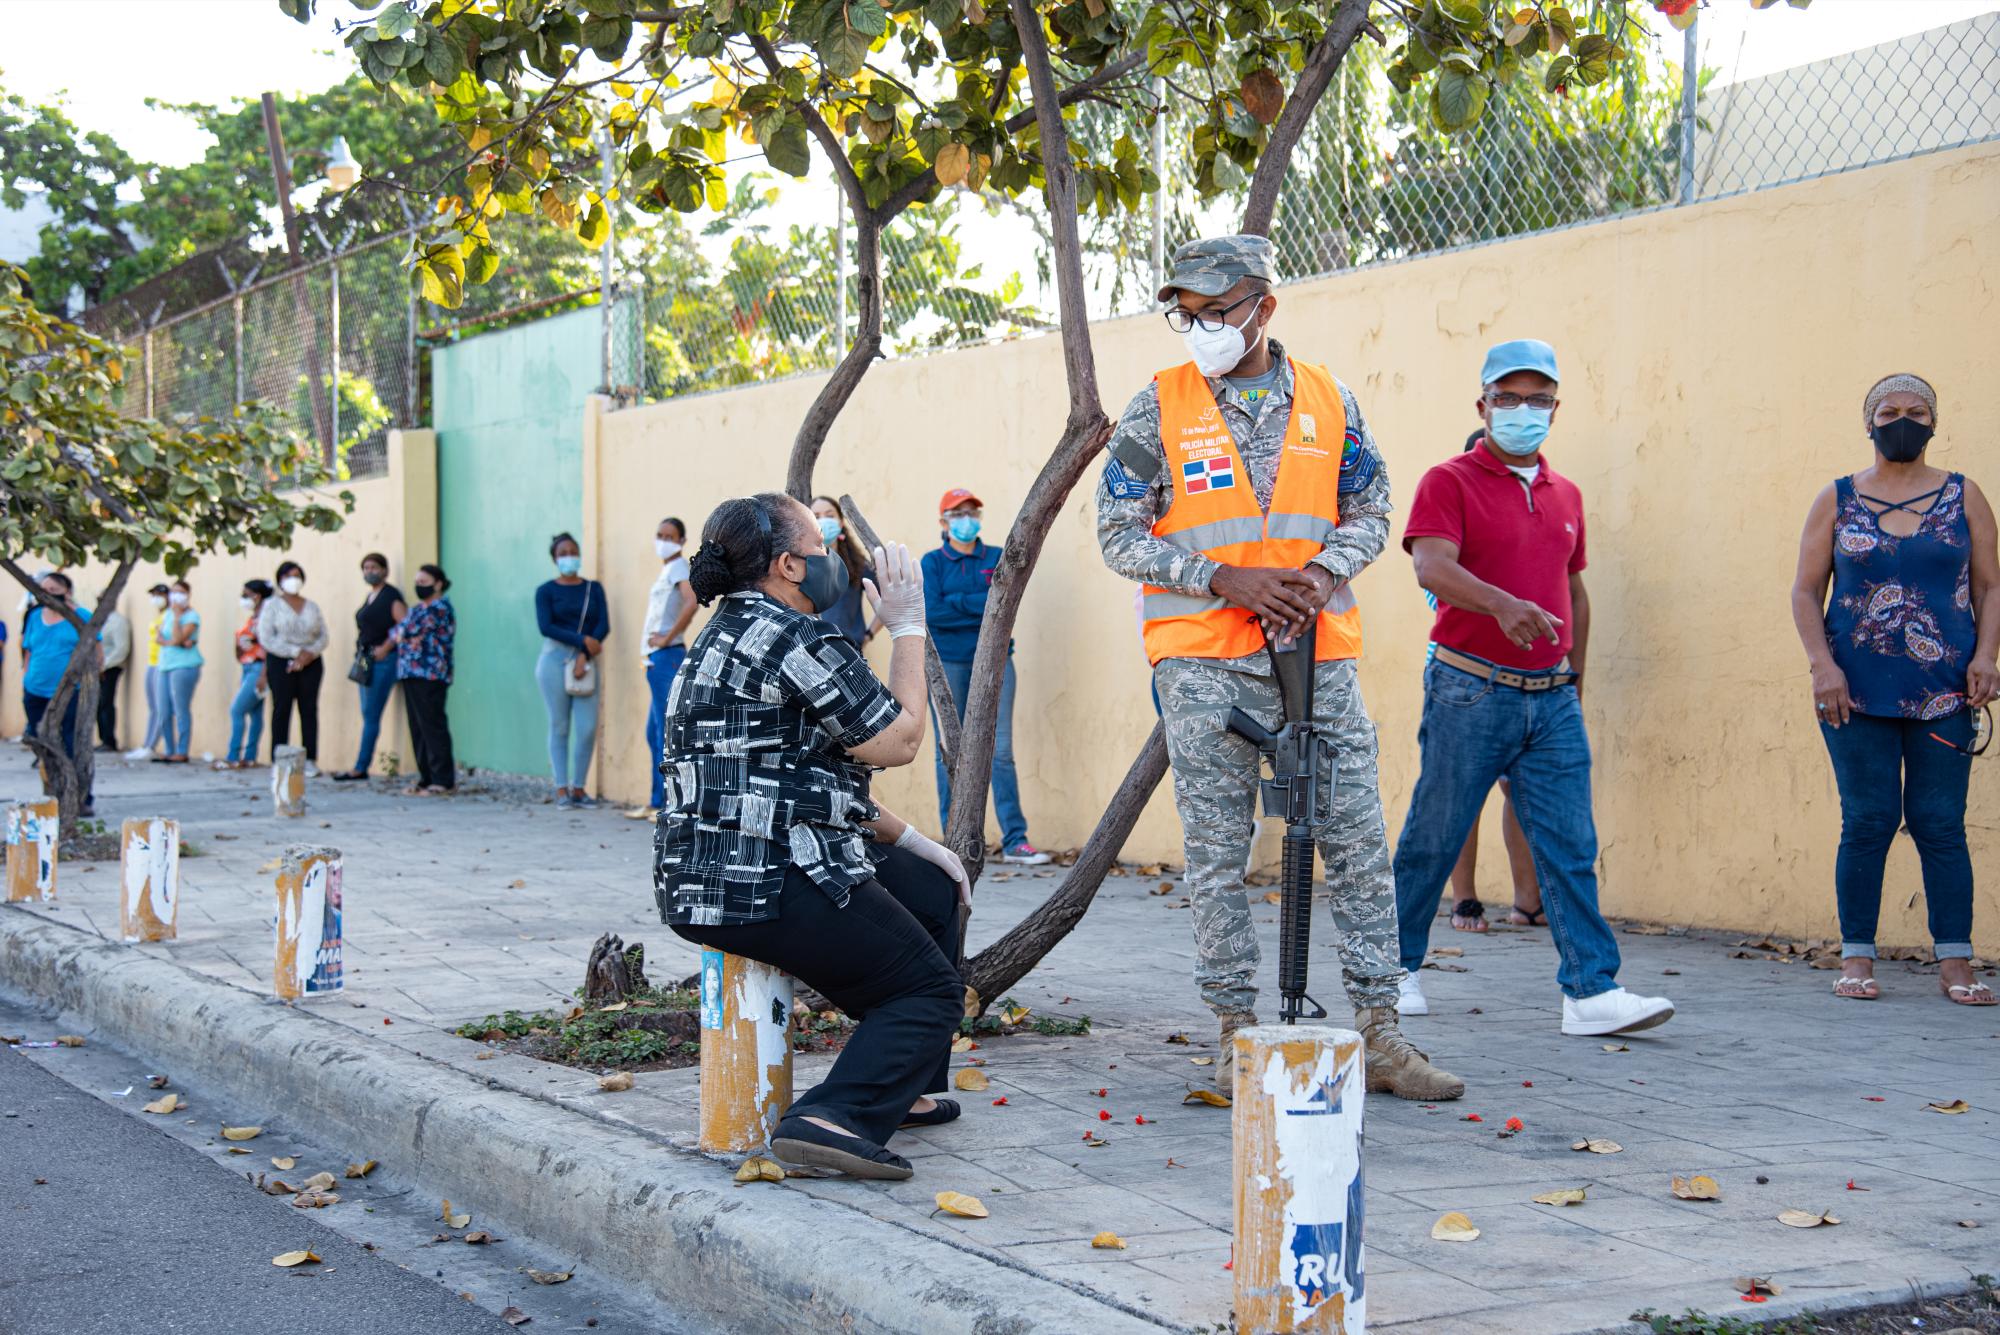 Una mujer de la tercera edad aguarda su turno guardando la distancia física sugerida por las autoridades (Dania Acevedo / Diario Libre)